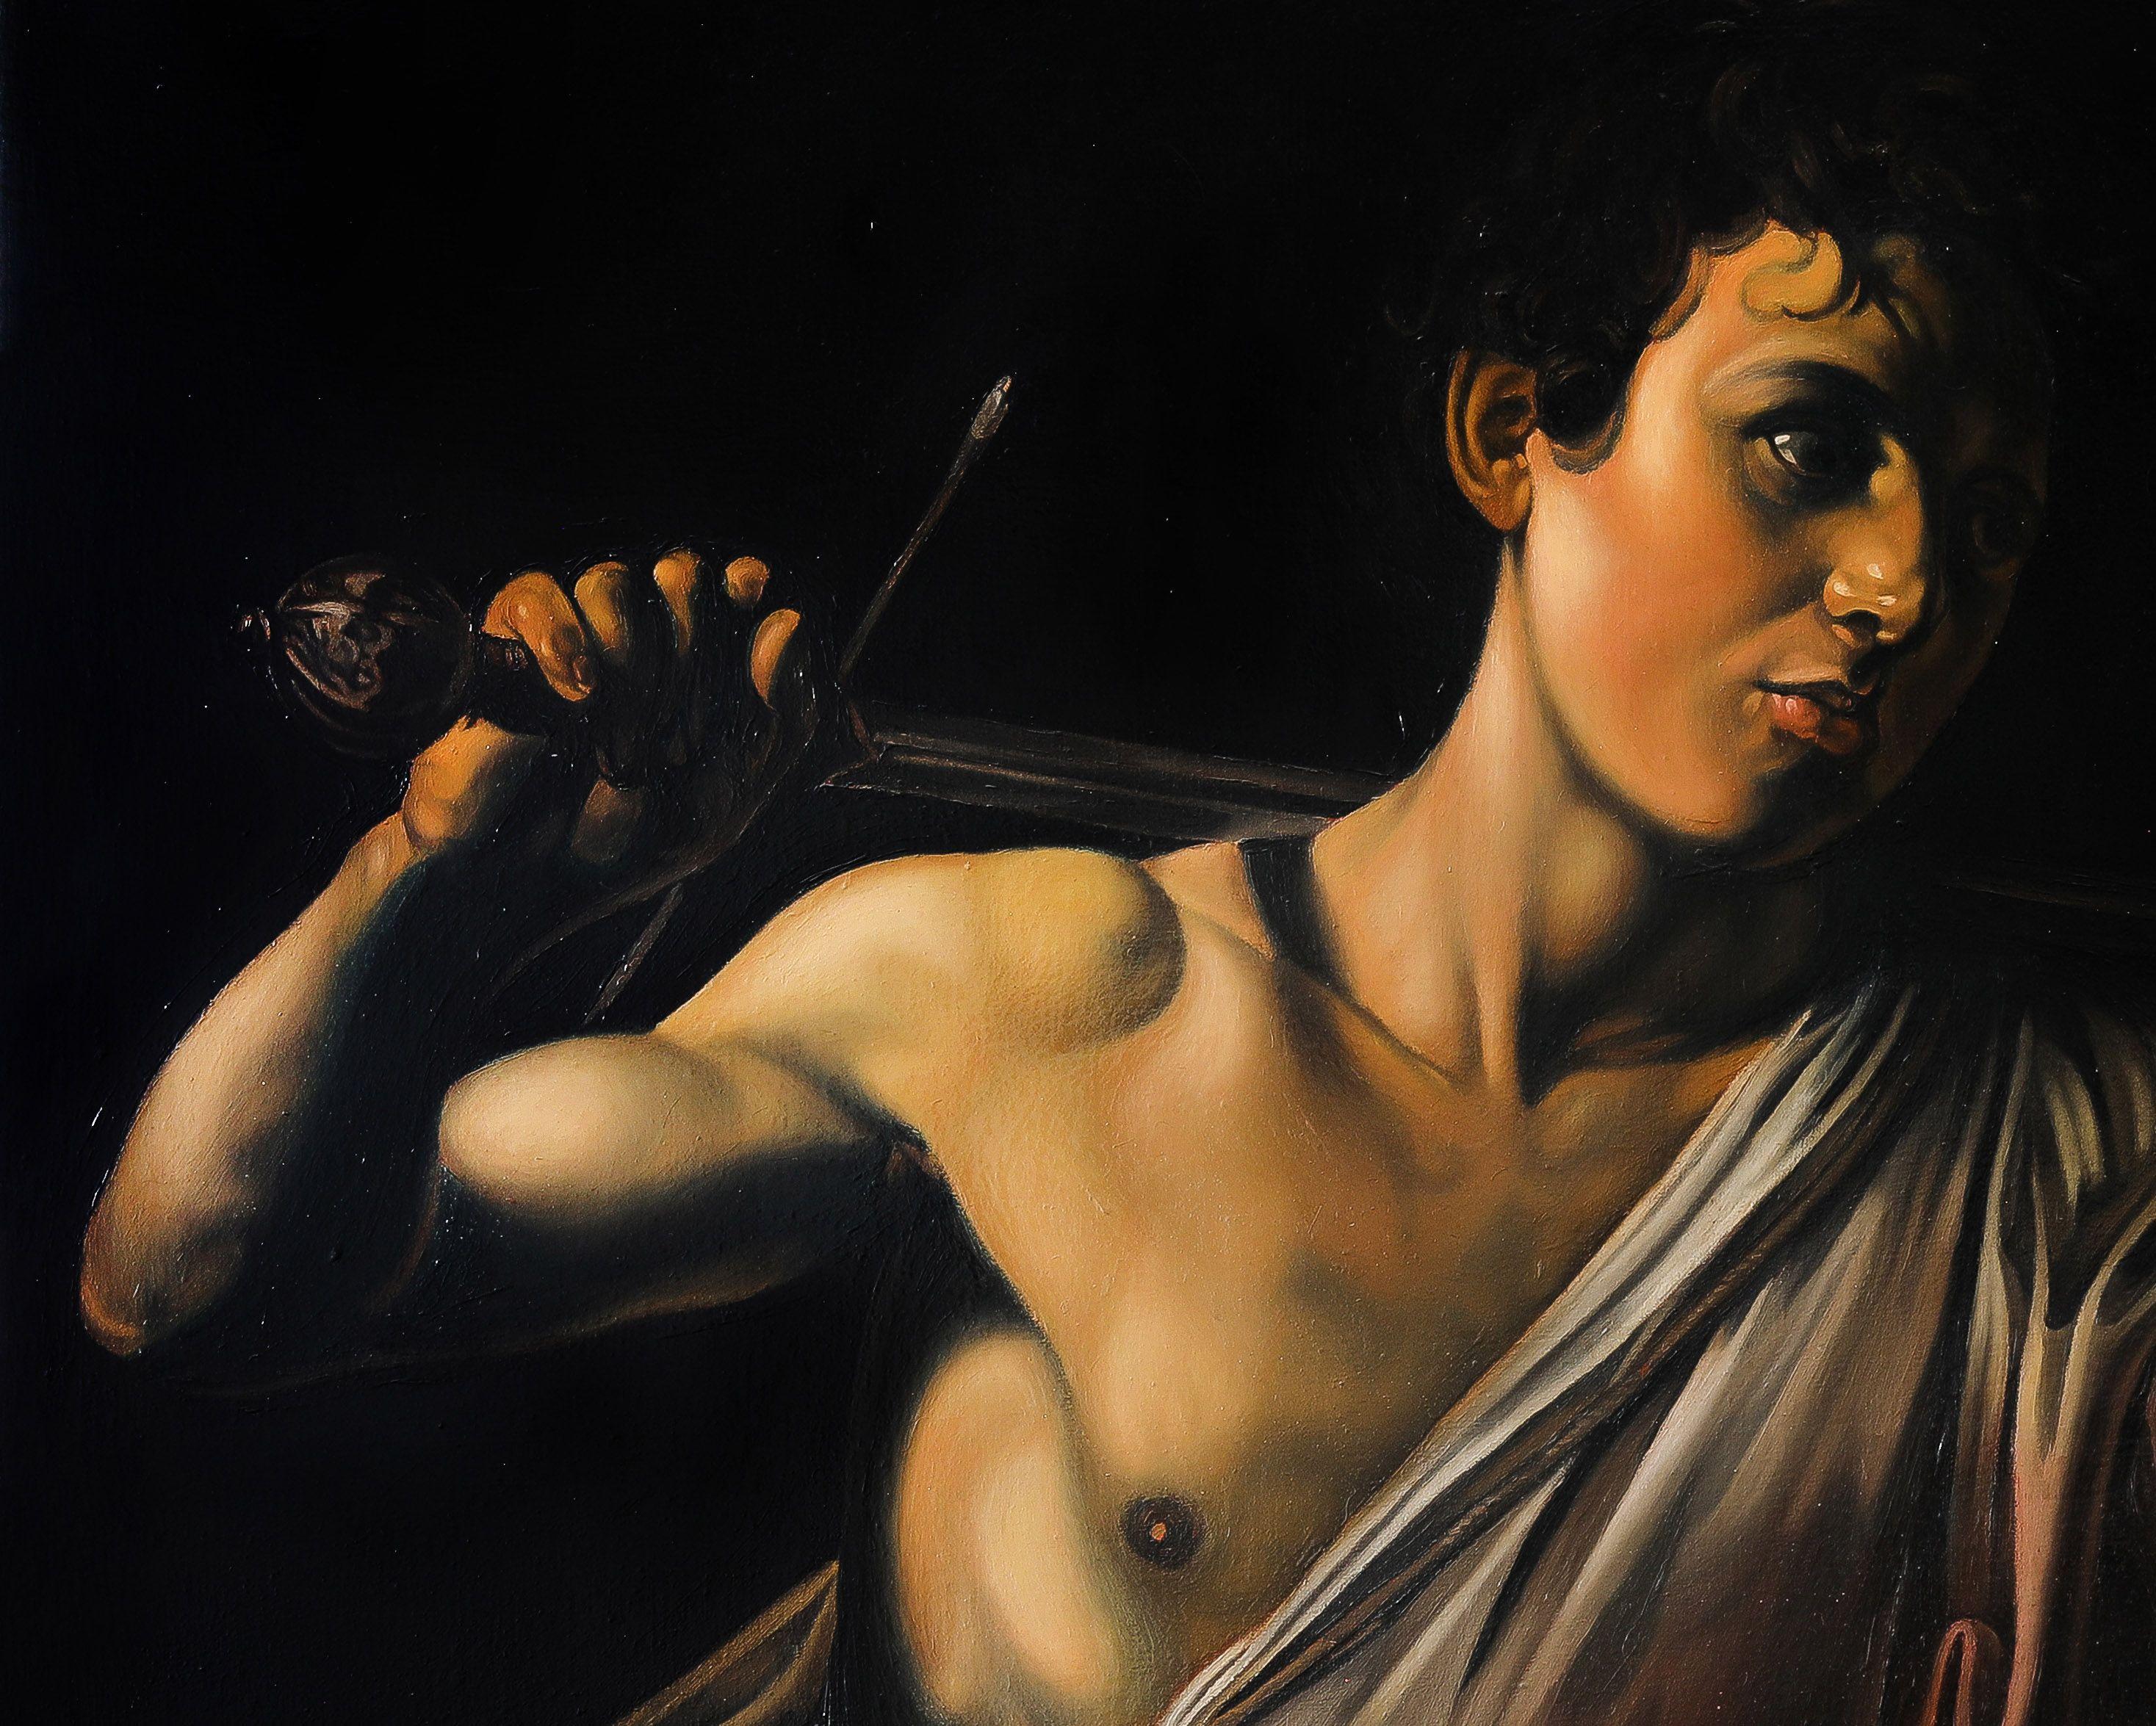 caravaggio david with the head of goliath